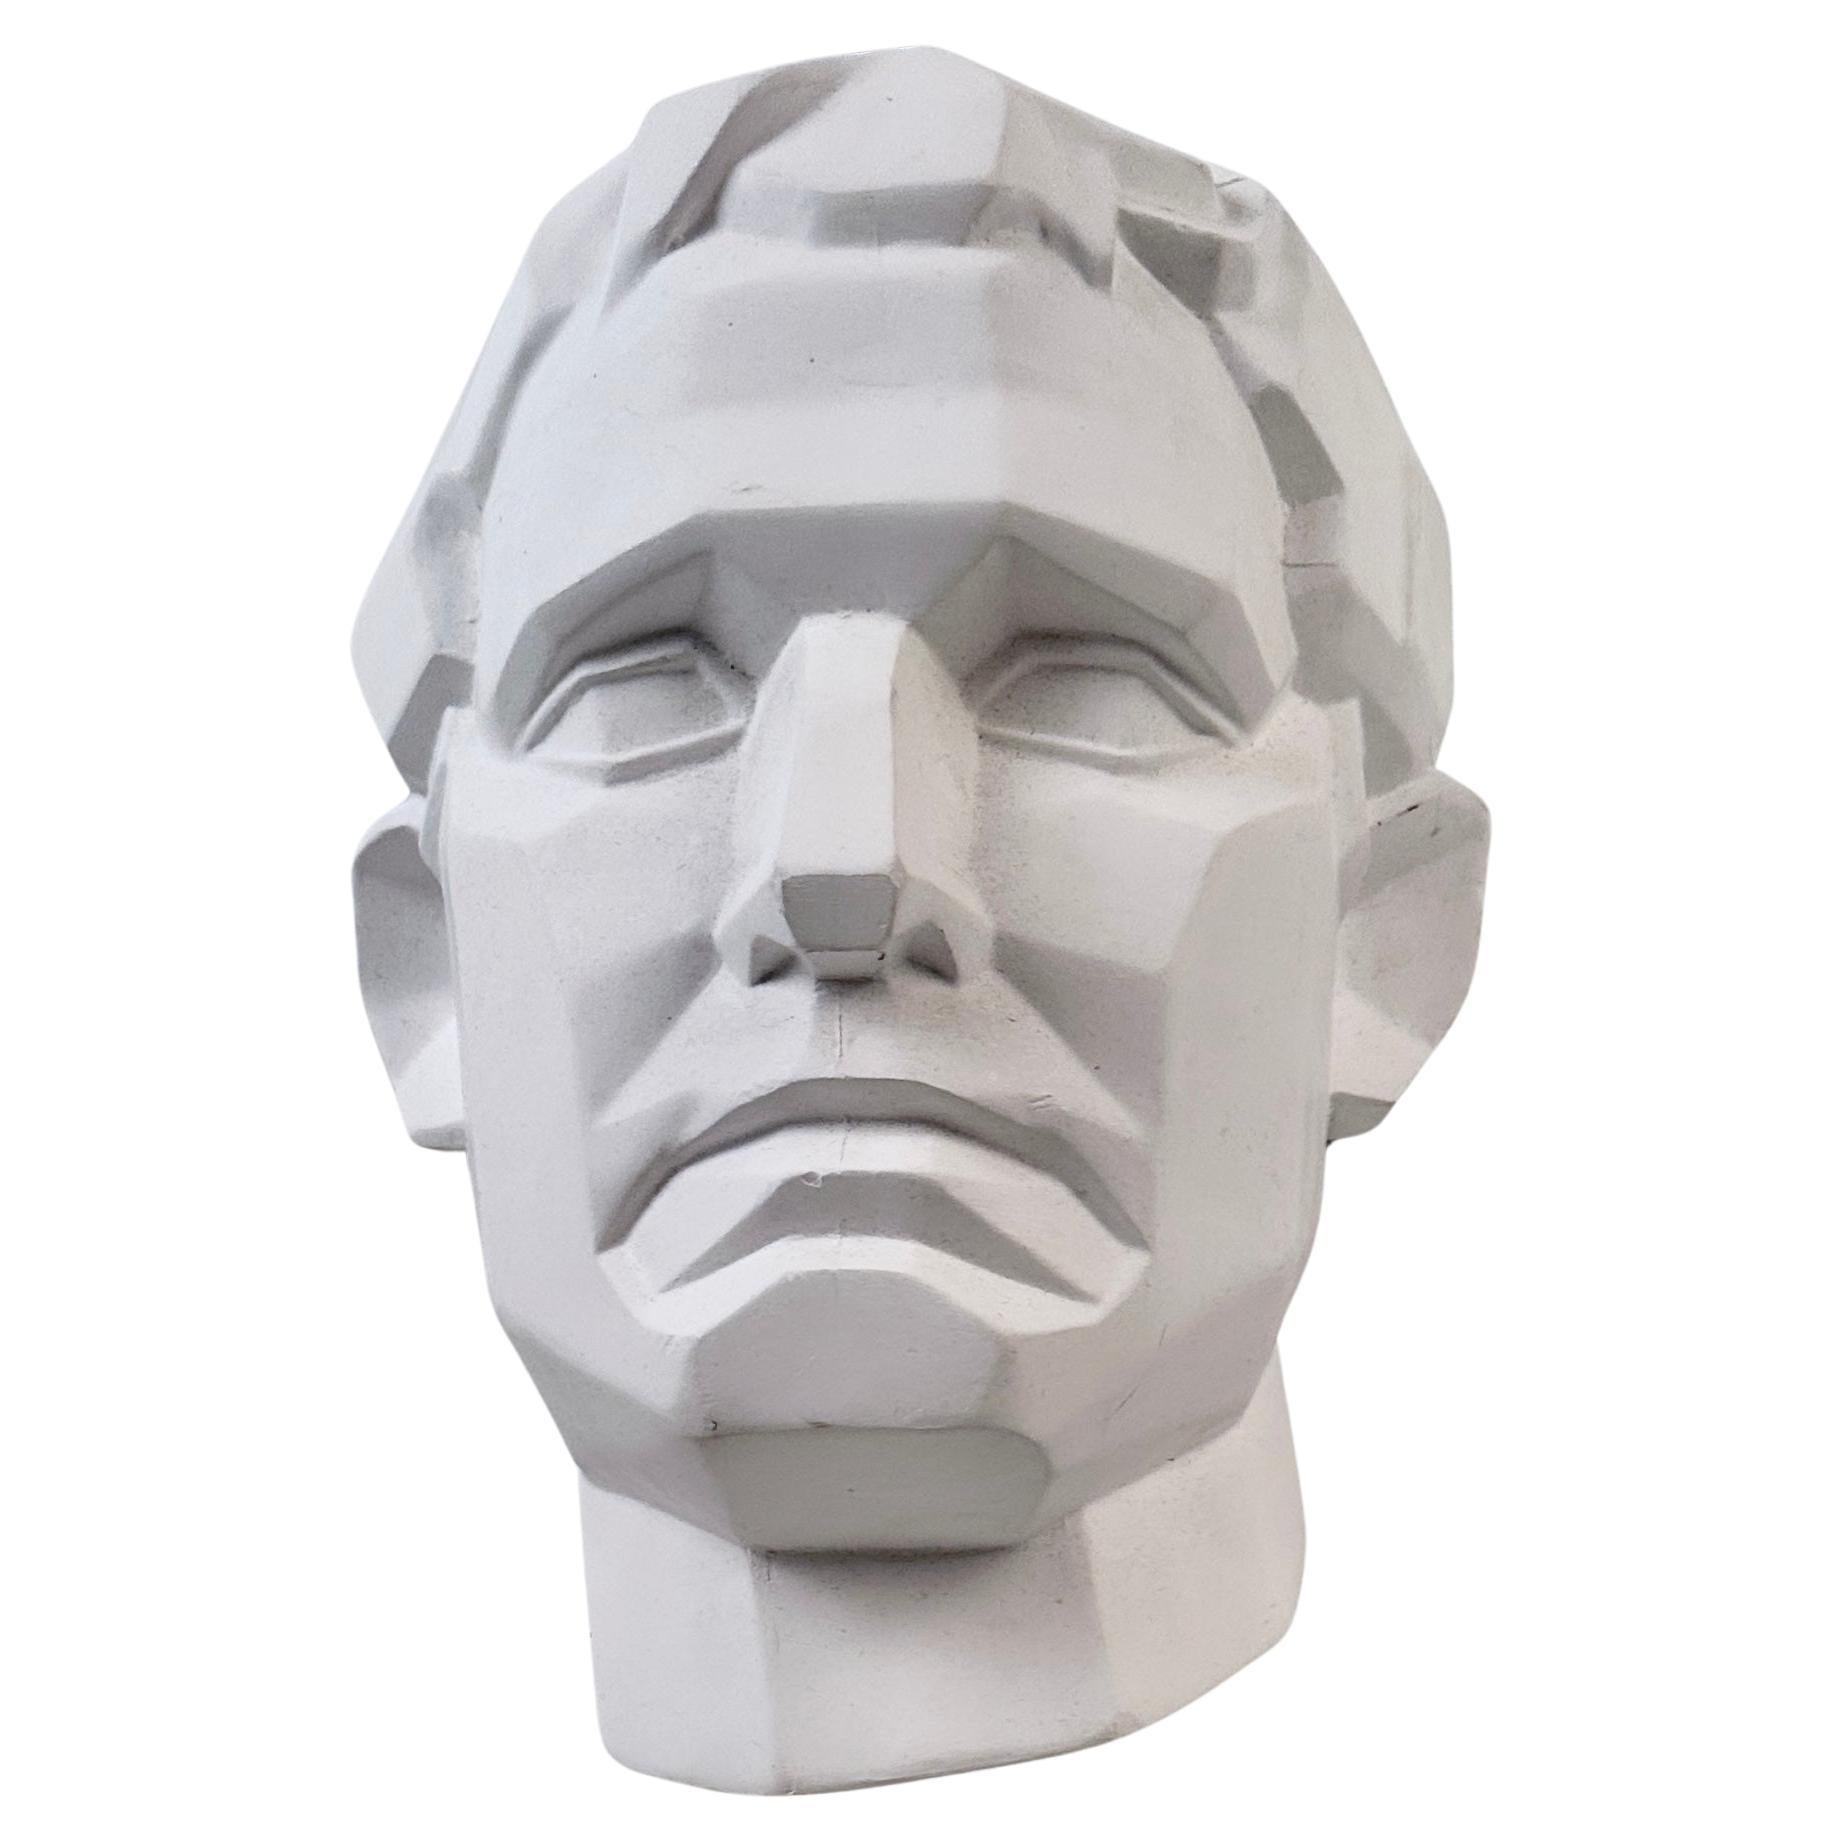 Modern Man's Head in Plaster